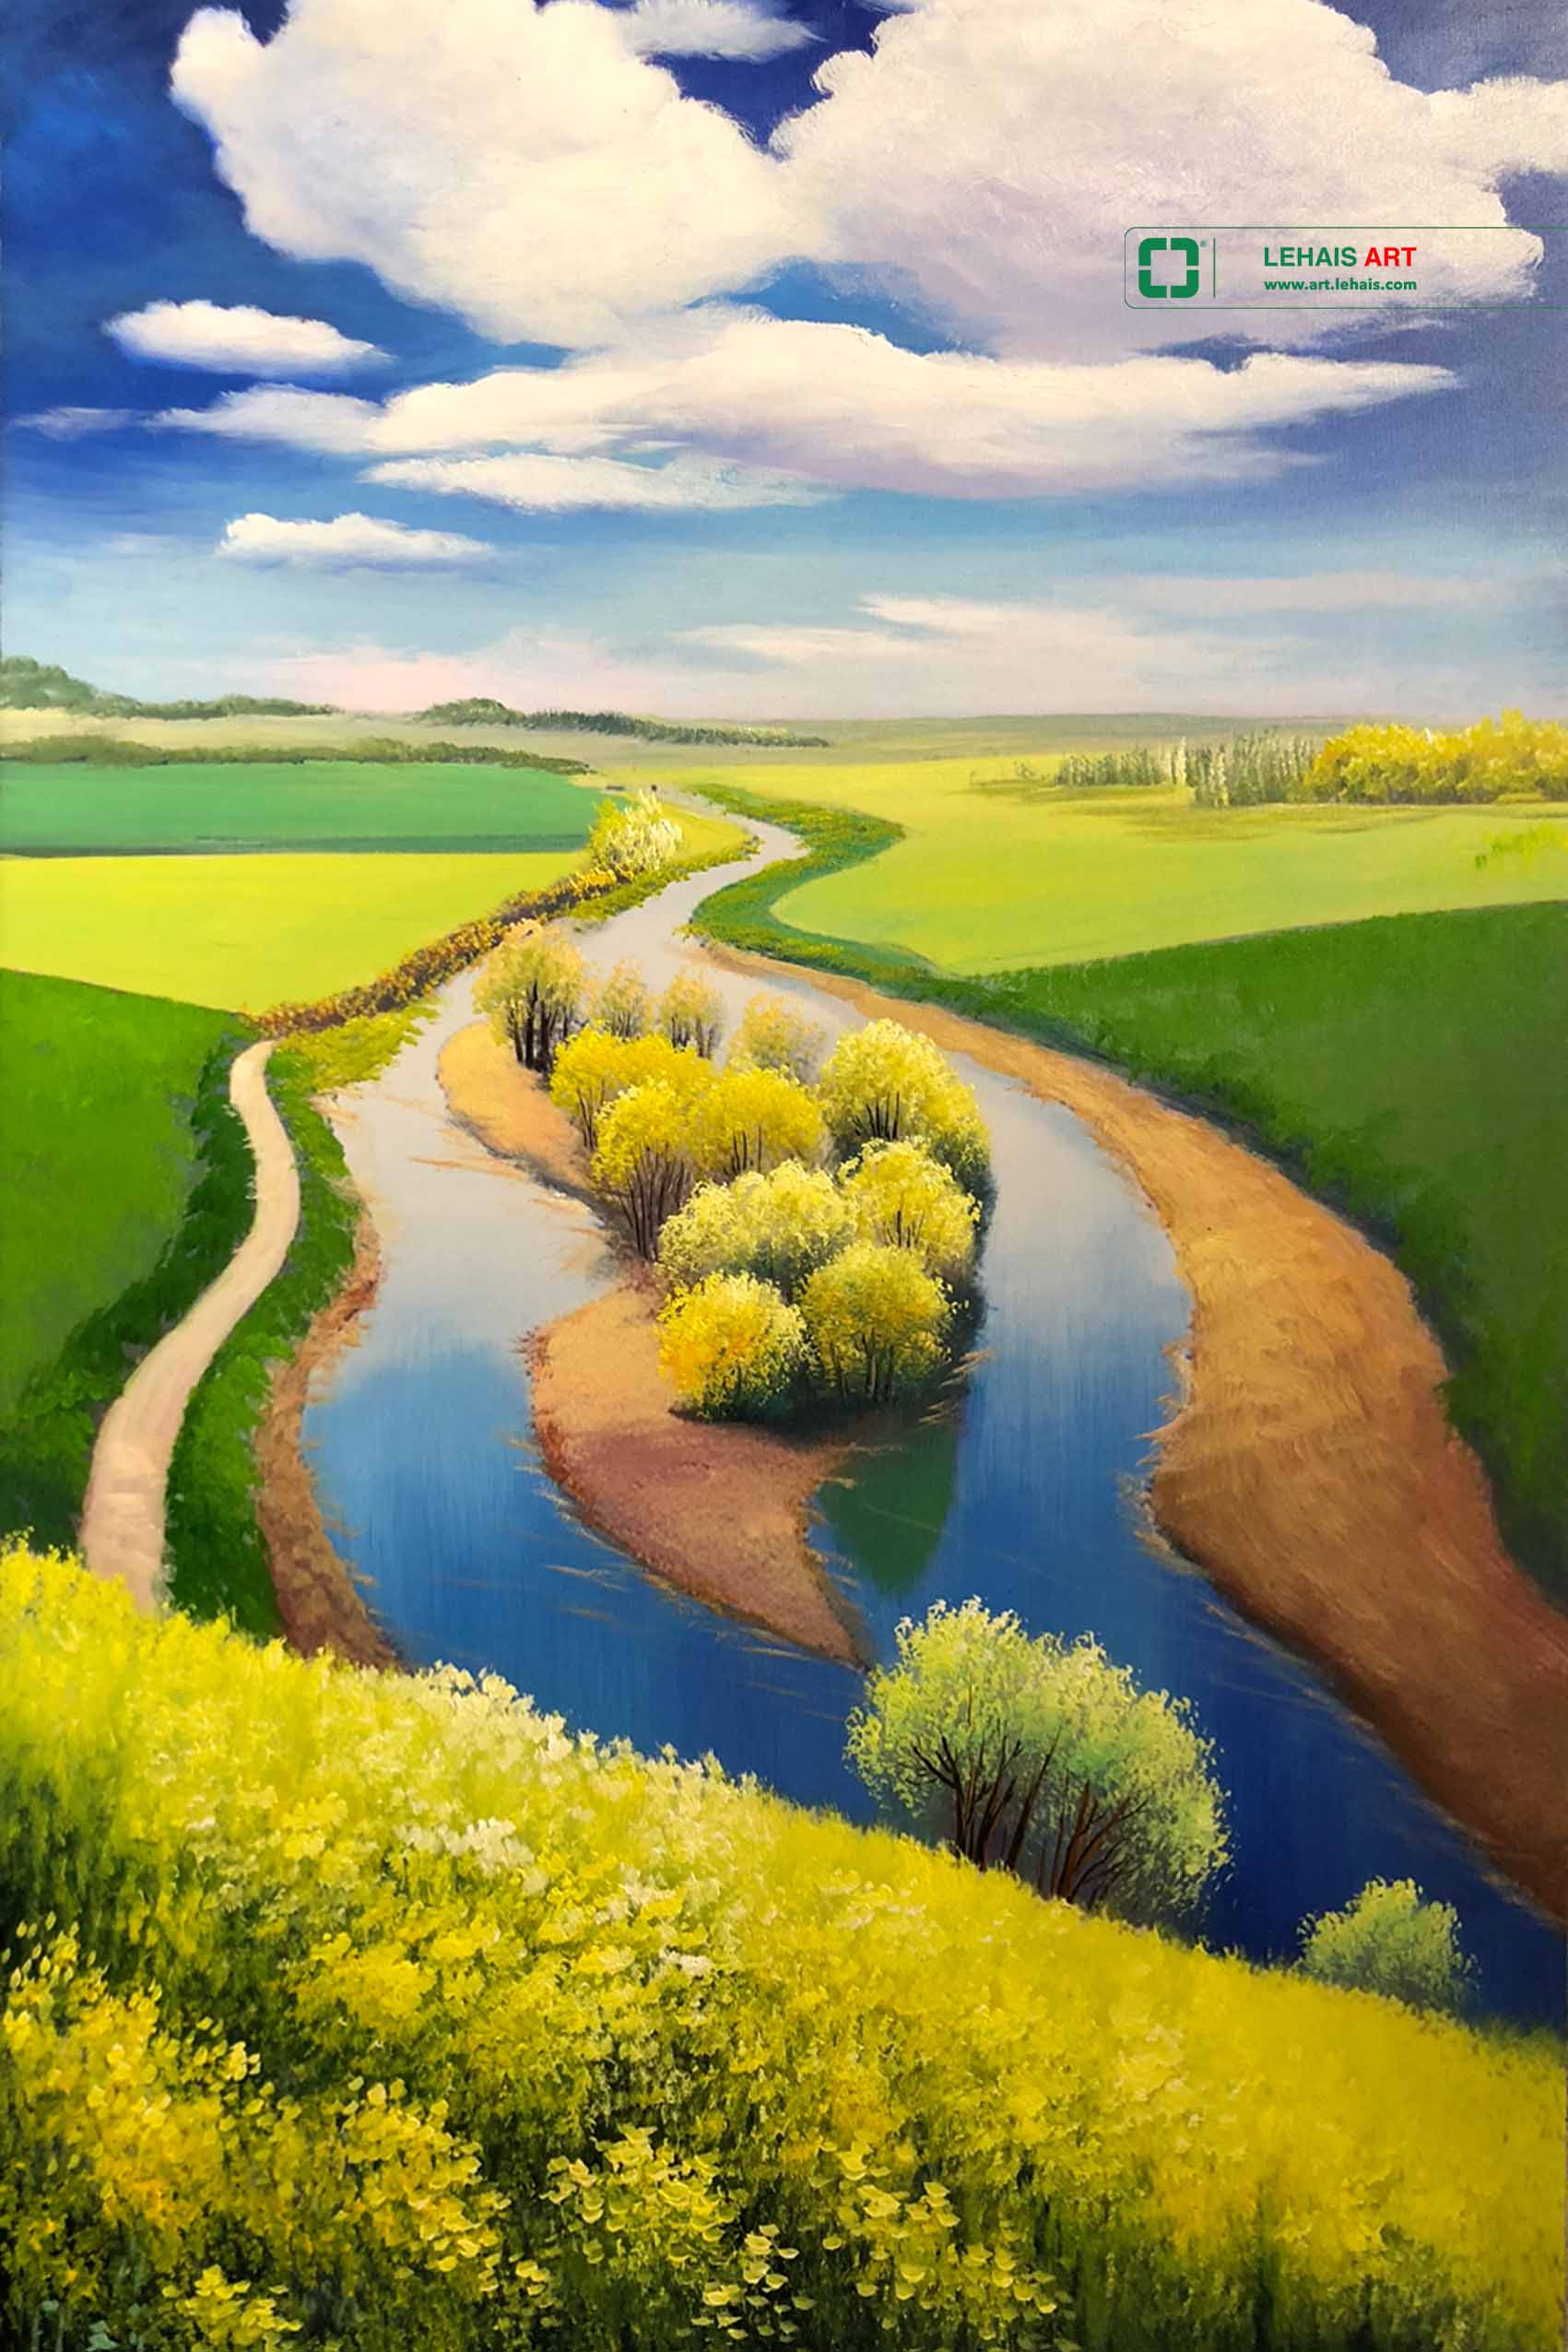 Tranh sơn dầu phong cảnh dòng sông quê - TSD659LHAR